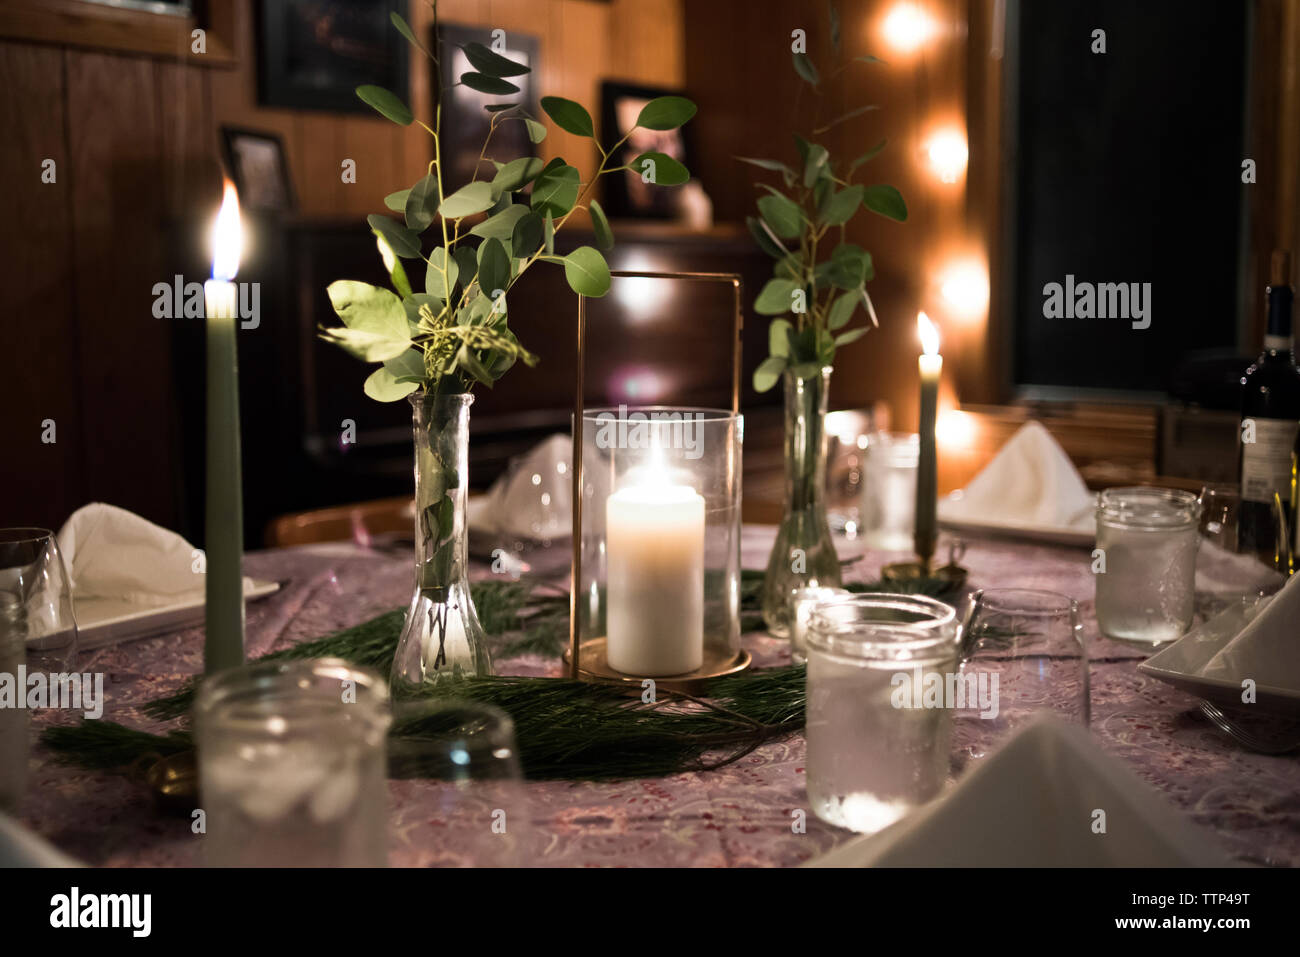 In der Nähe von brennenden Kerzen am Esstisch zu Hause eingerichtet Stockfoto